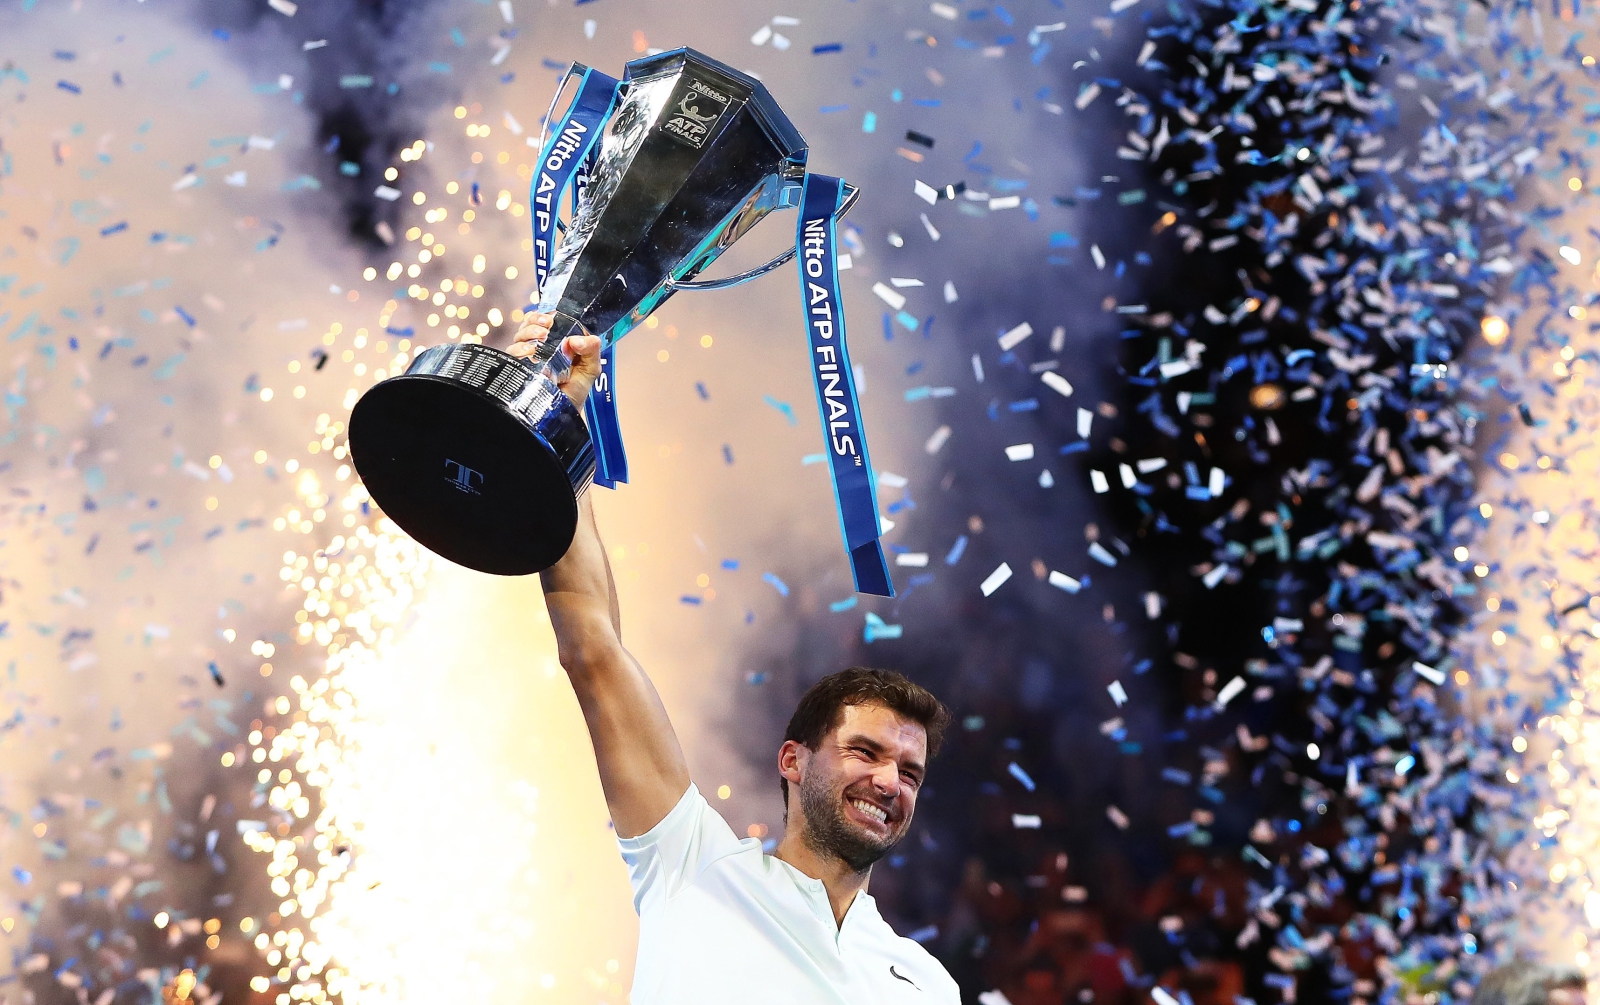 Bułgar Grigor Dimitrov świętuje zwycięstwo w ATP World Tour Finals tennis tournament w Londynie.